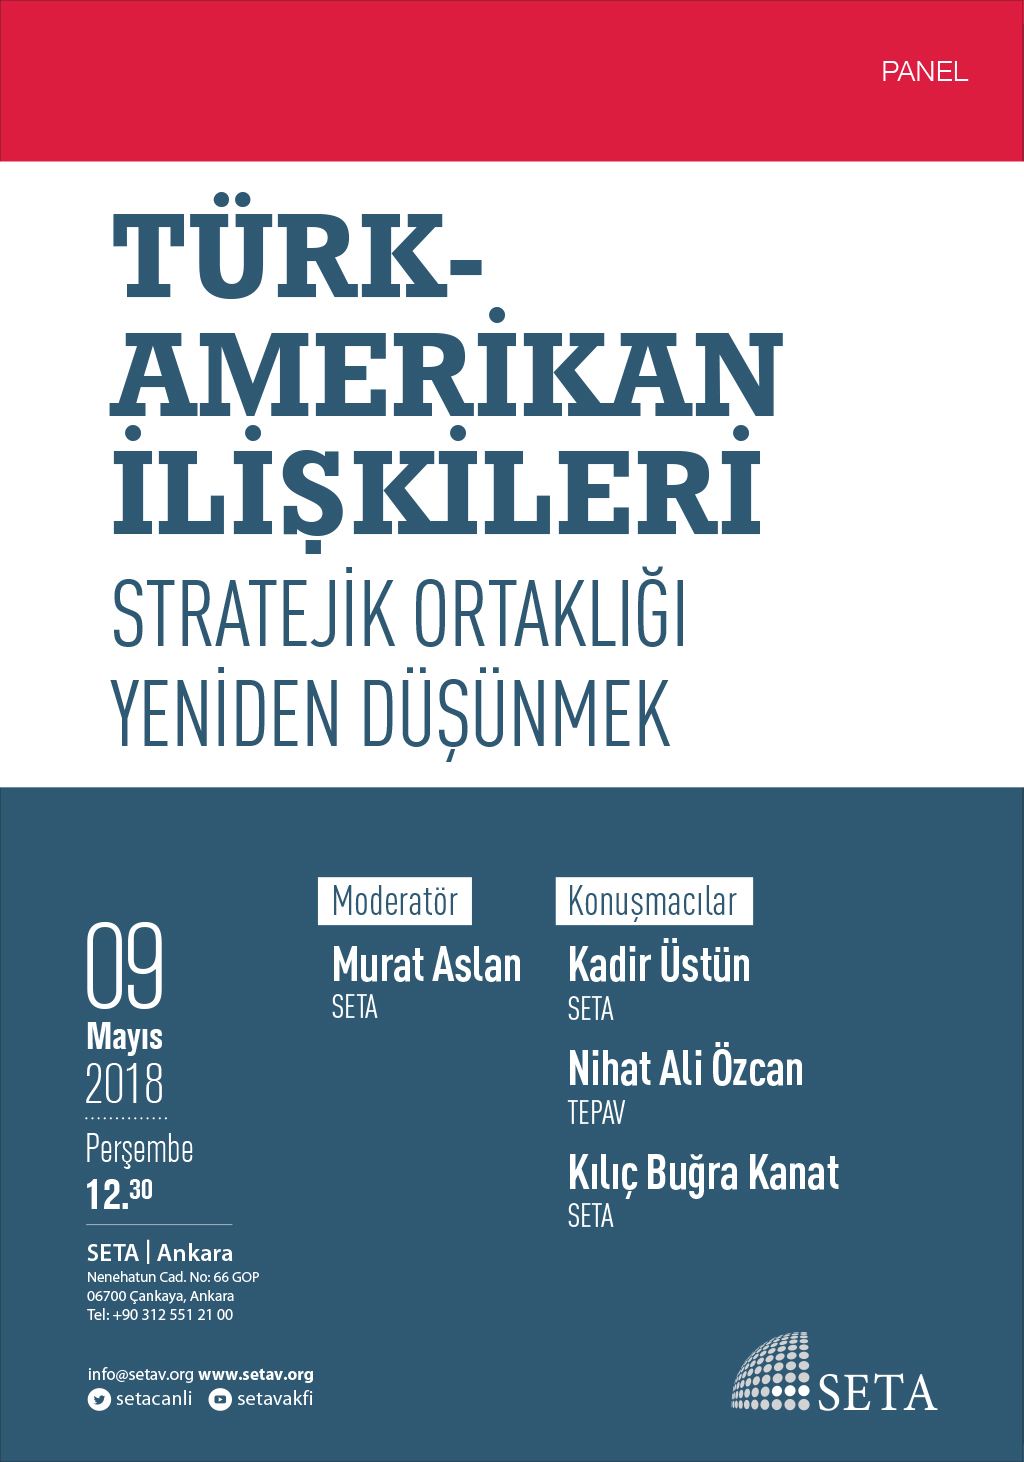 Panel Türk-Amerikan İlişkileri Stratejik Ortaklığı Yeniden Düşünmek